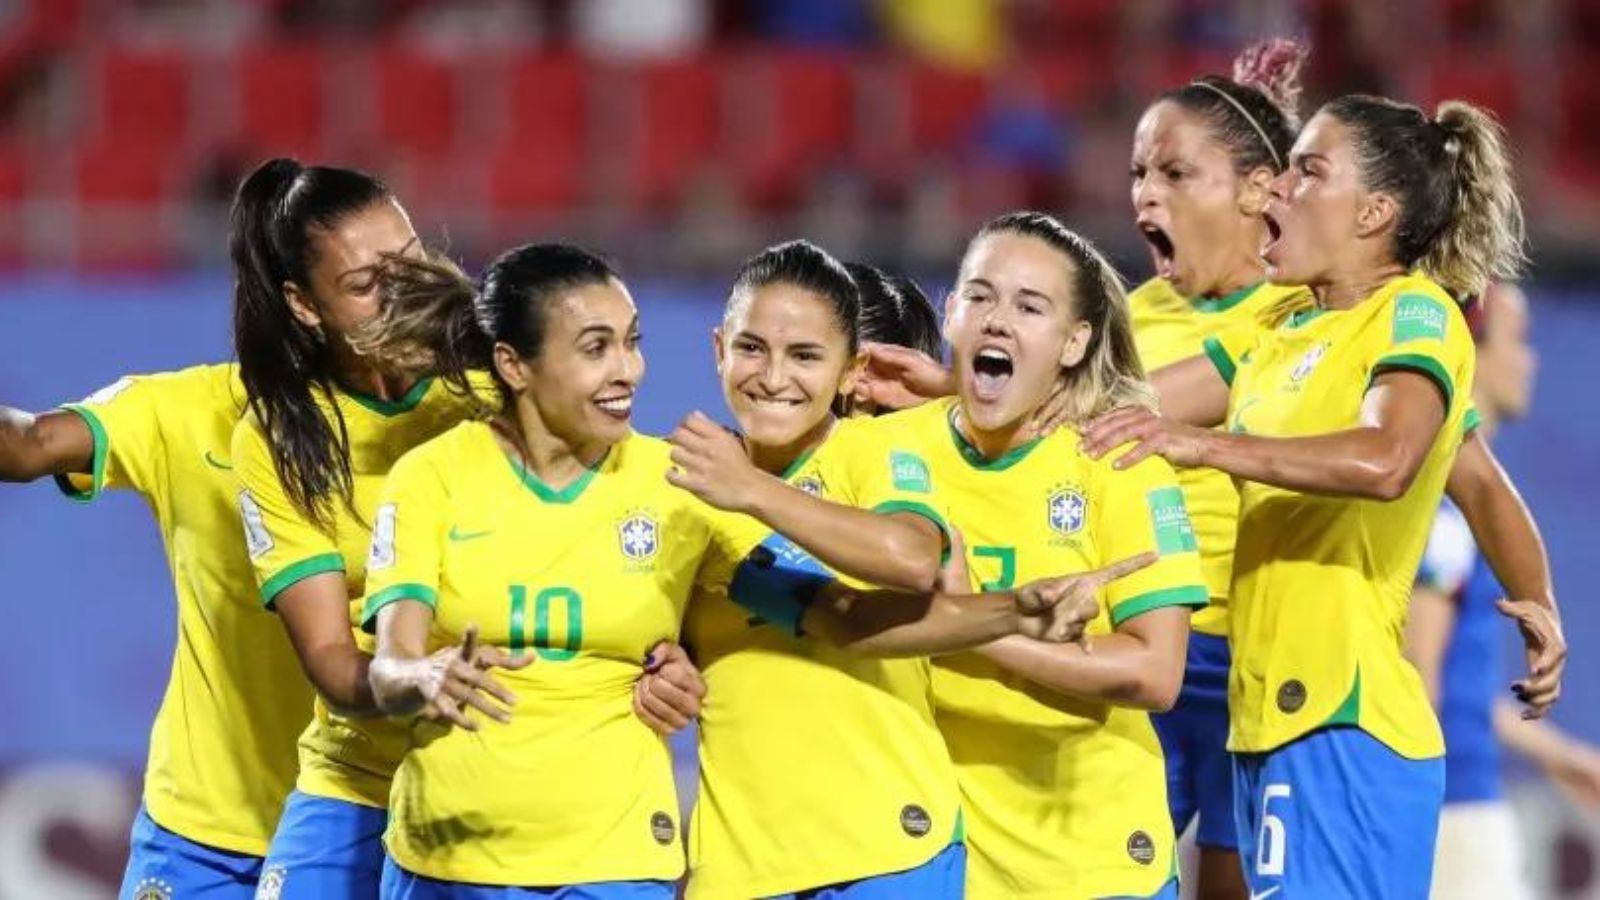 Avante, meninas do Brasil: a história revela que já somos vencedoras